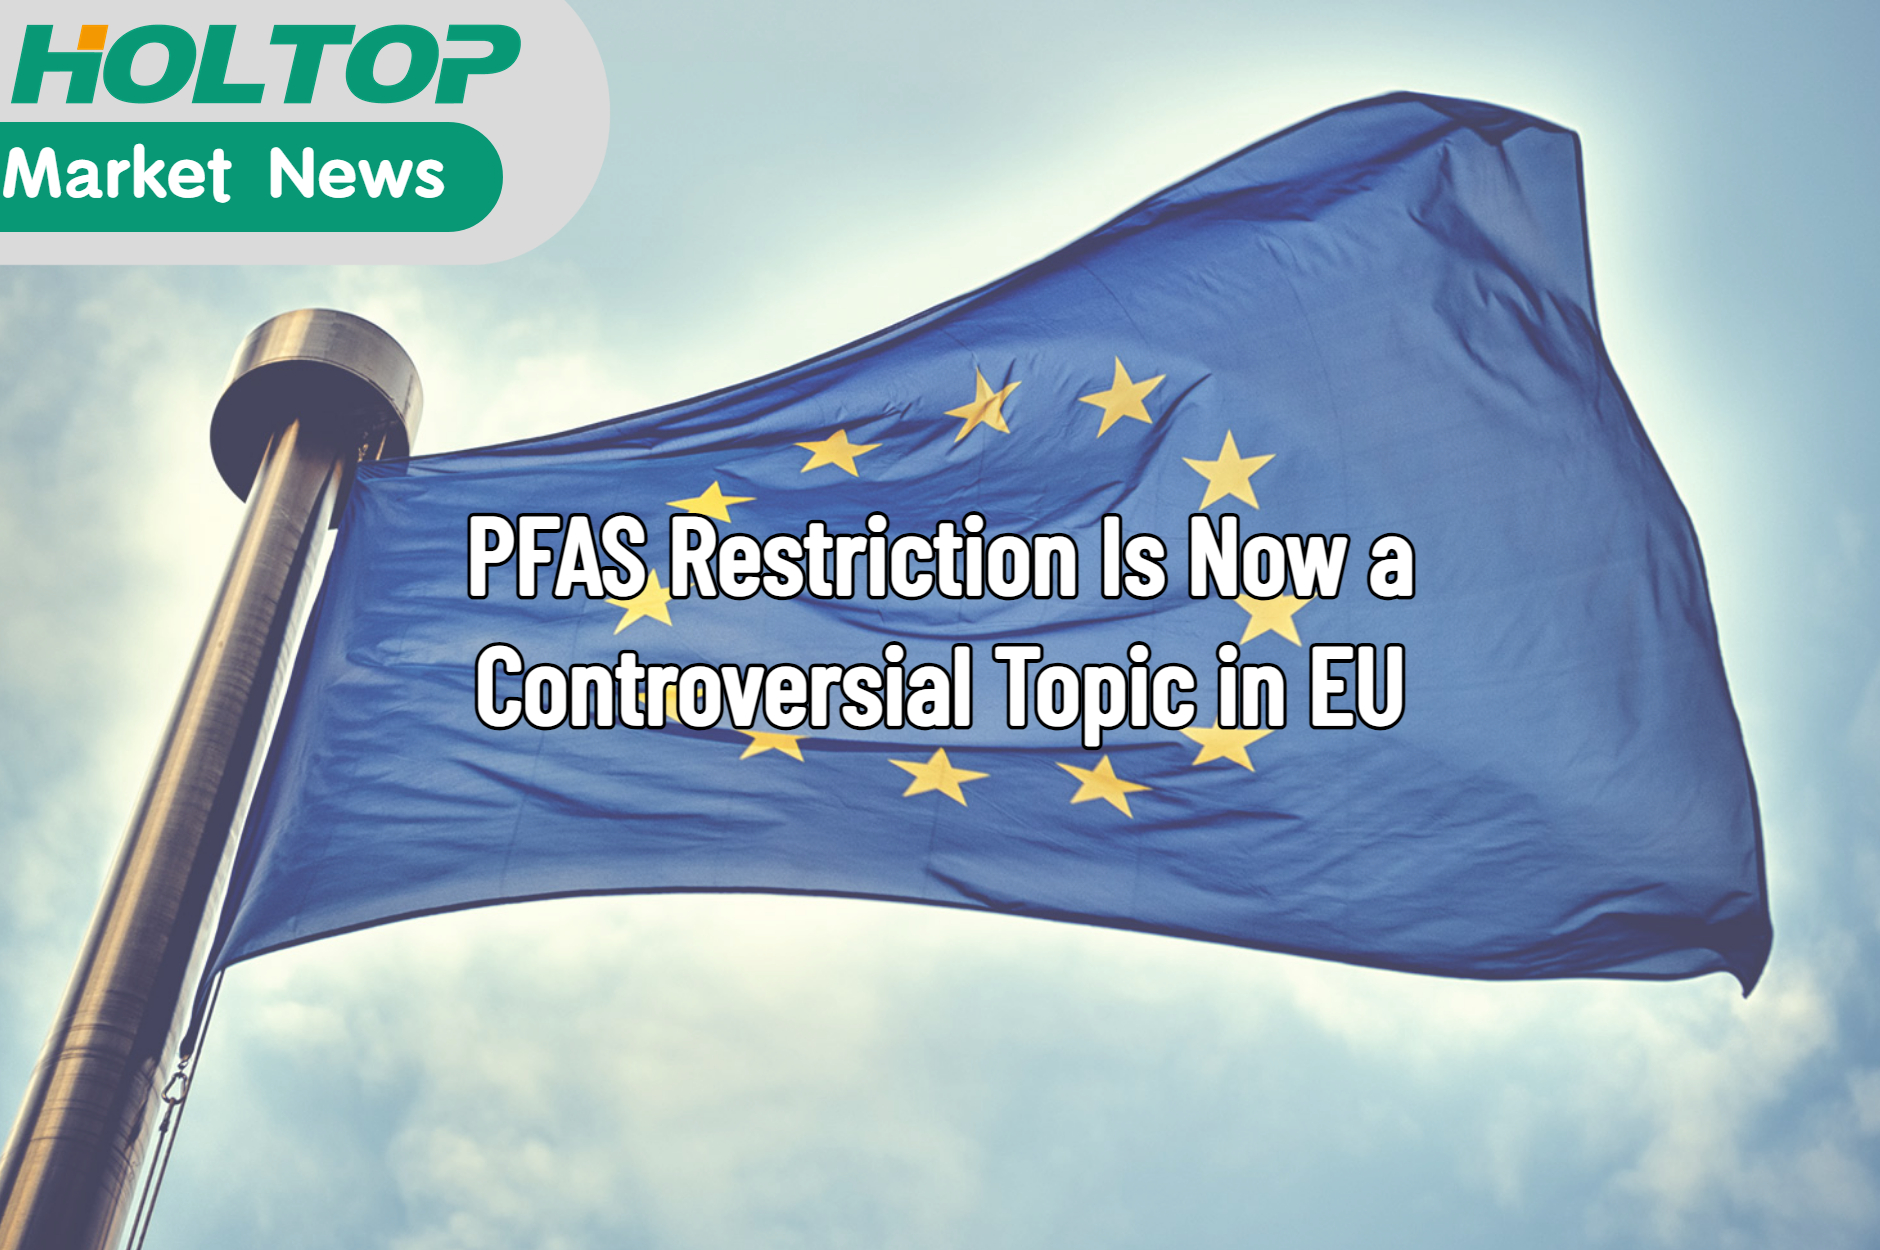 Die PFAS-Beschränkung ist jetzt ein kontroverses Thema in der EU